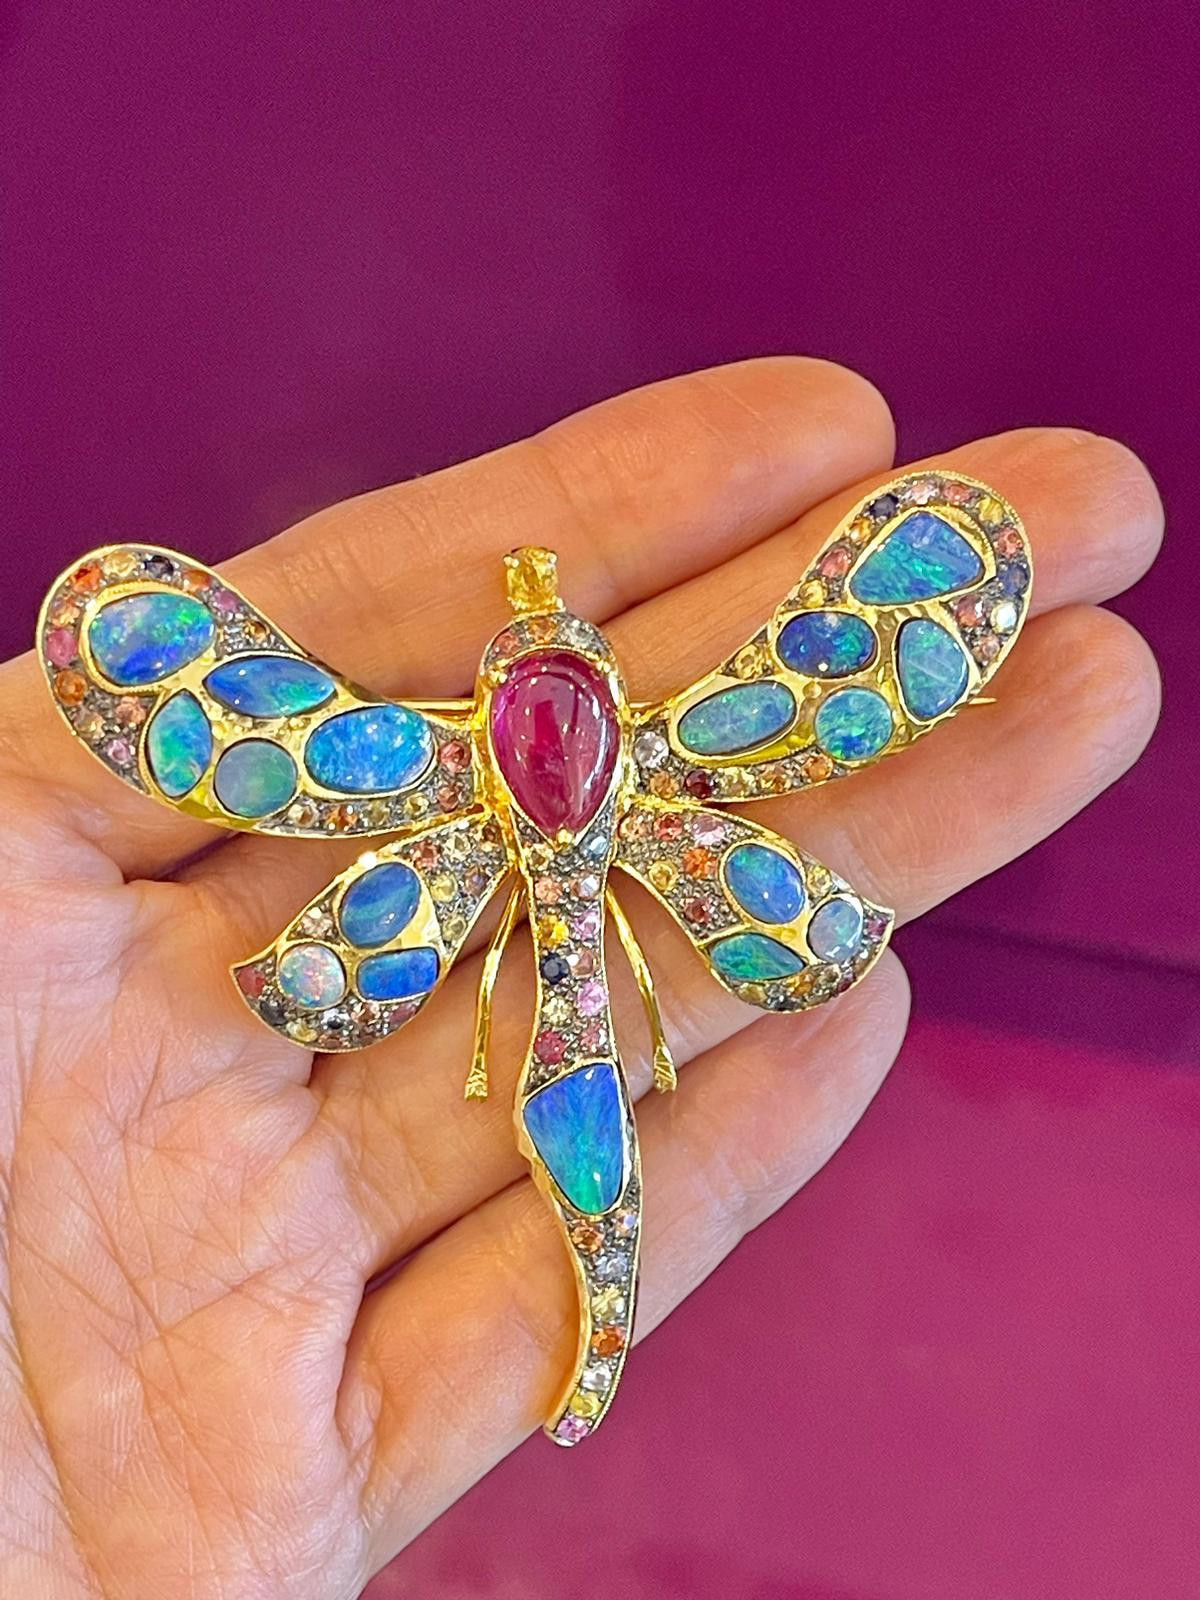 Baroque Bochic “Capri” Blue Fire Opal, Ruby & Sapphire Brooch Set in 22k Gold & Silver